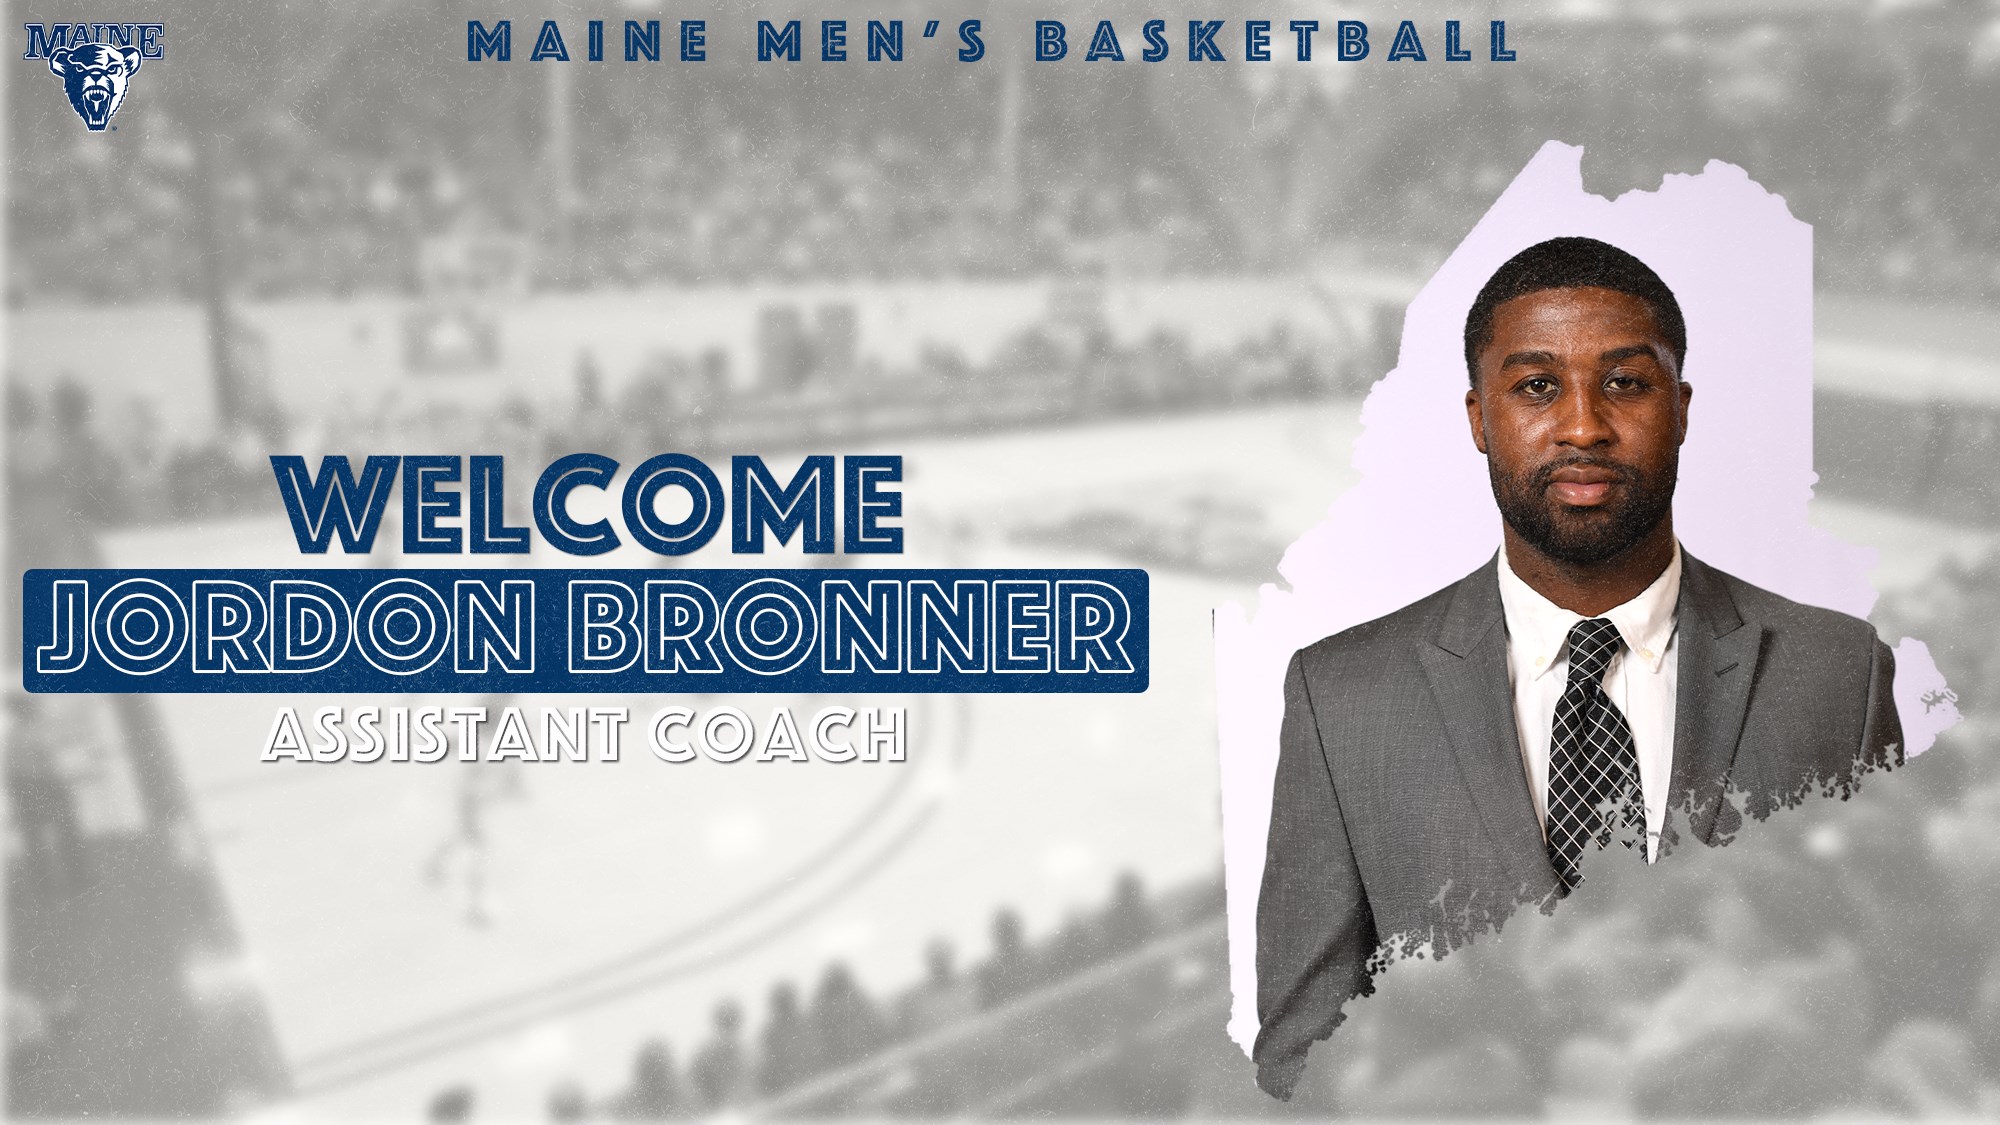 Jordon Bronner Named Assistant Coach for Maine Men's Basketball - HoopDirt